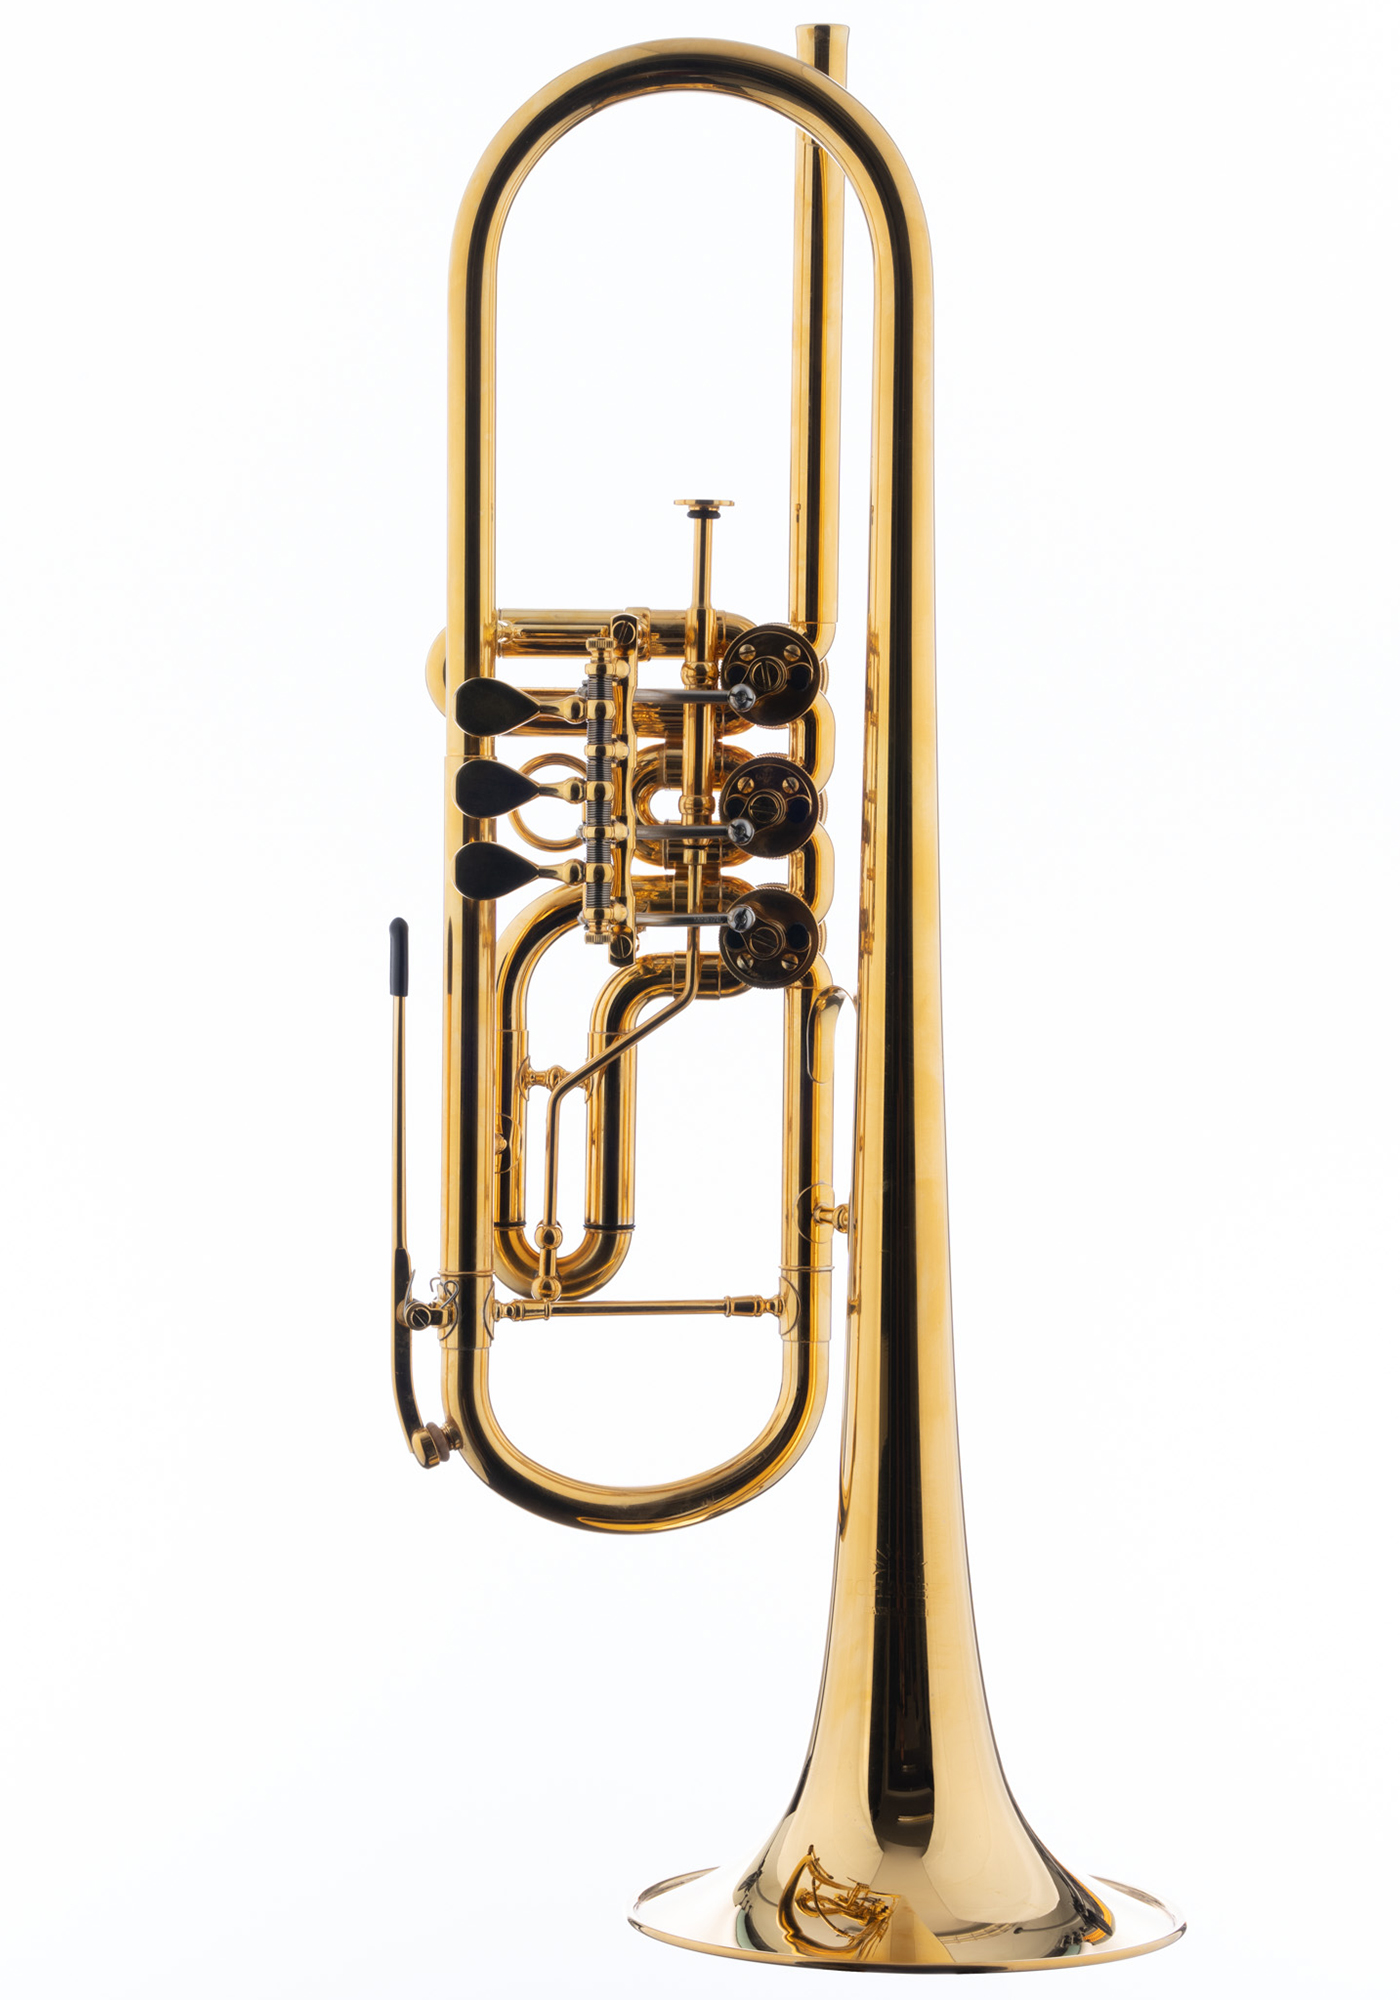 Schagerl Bb-Trumpet "HANS GANSCH" gold plated